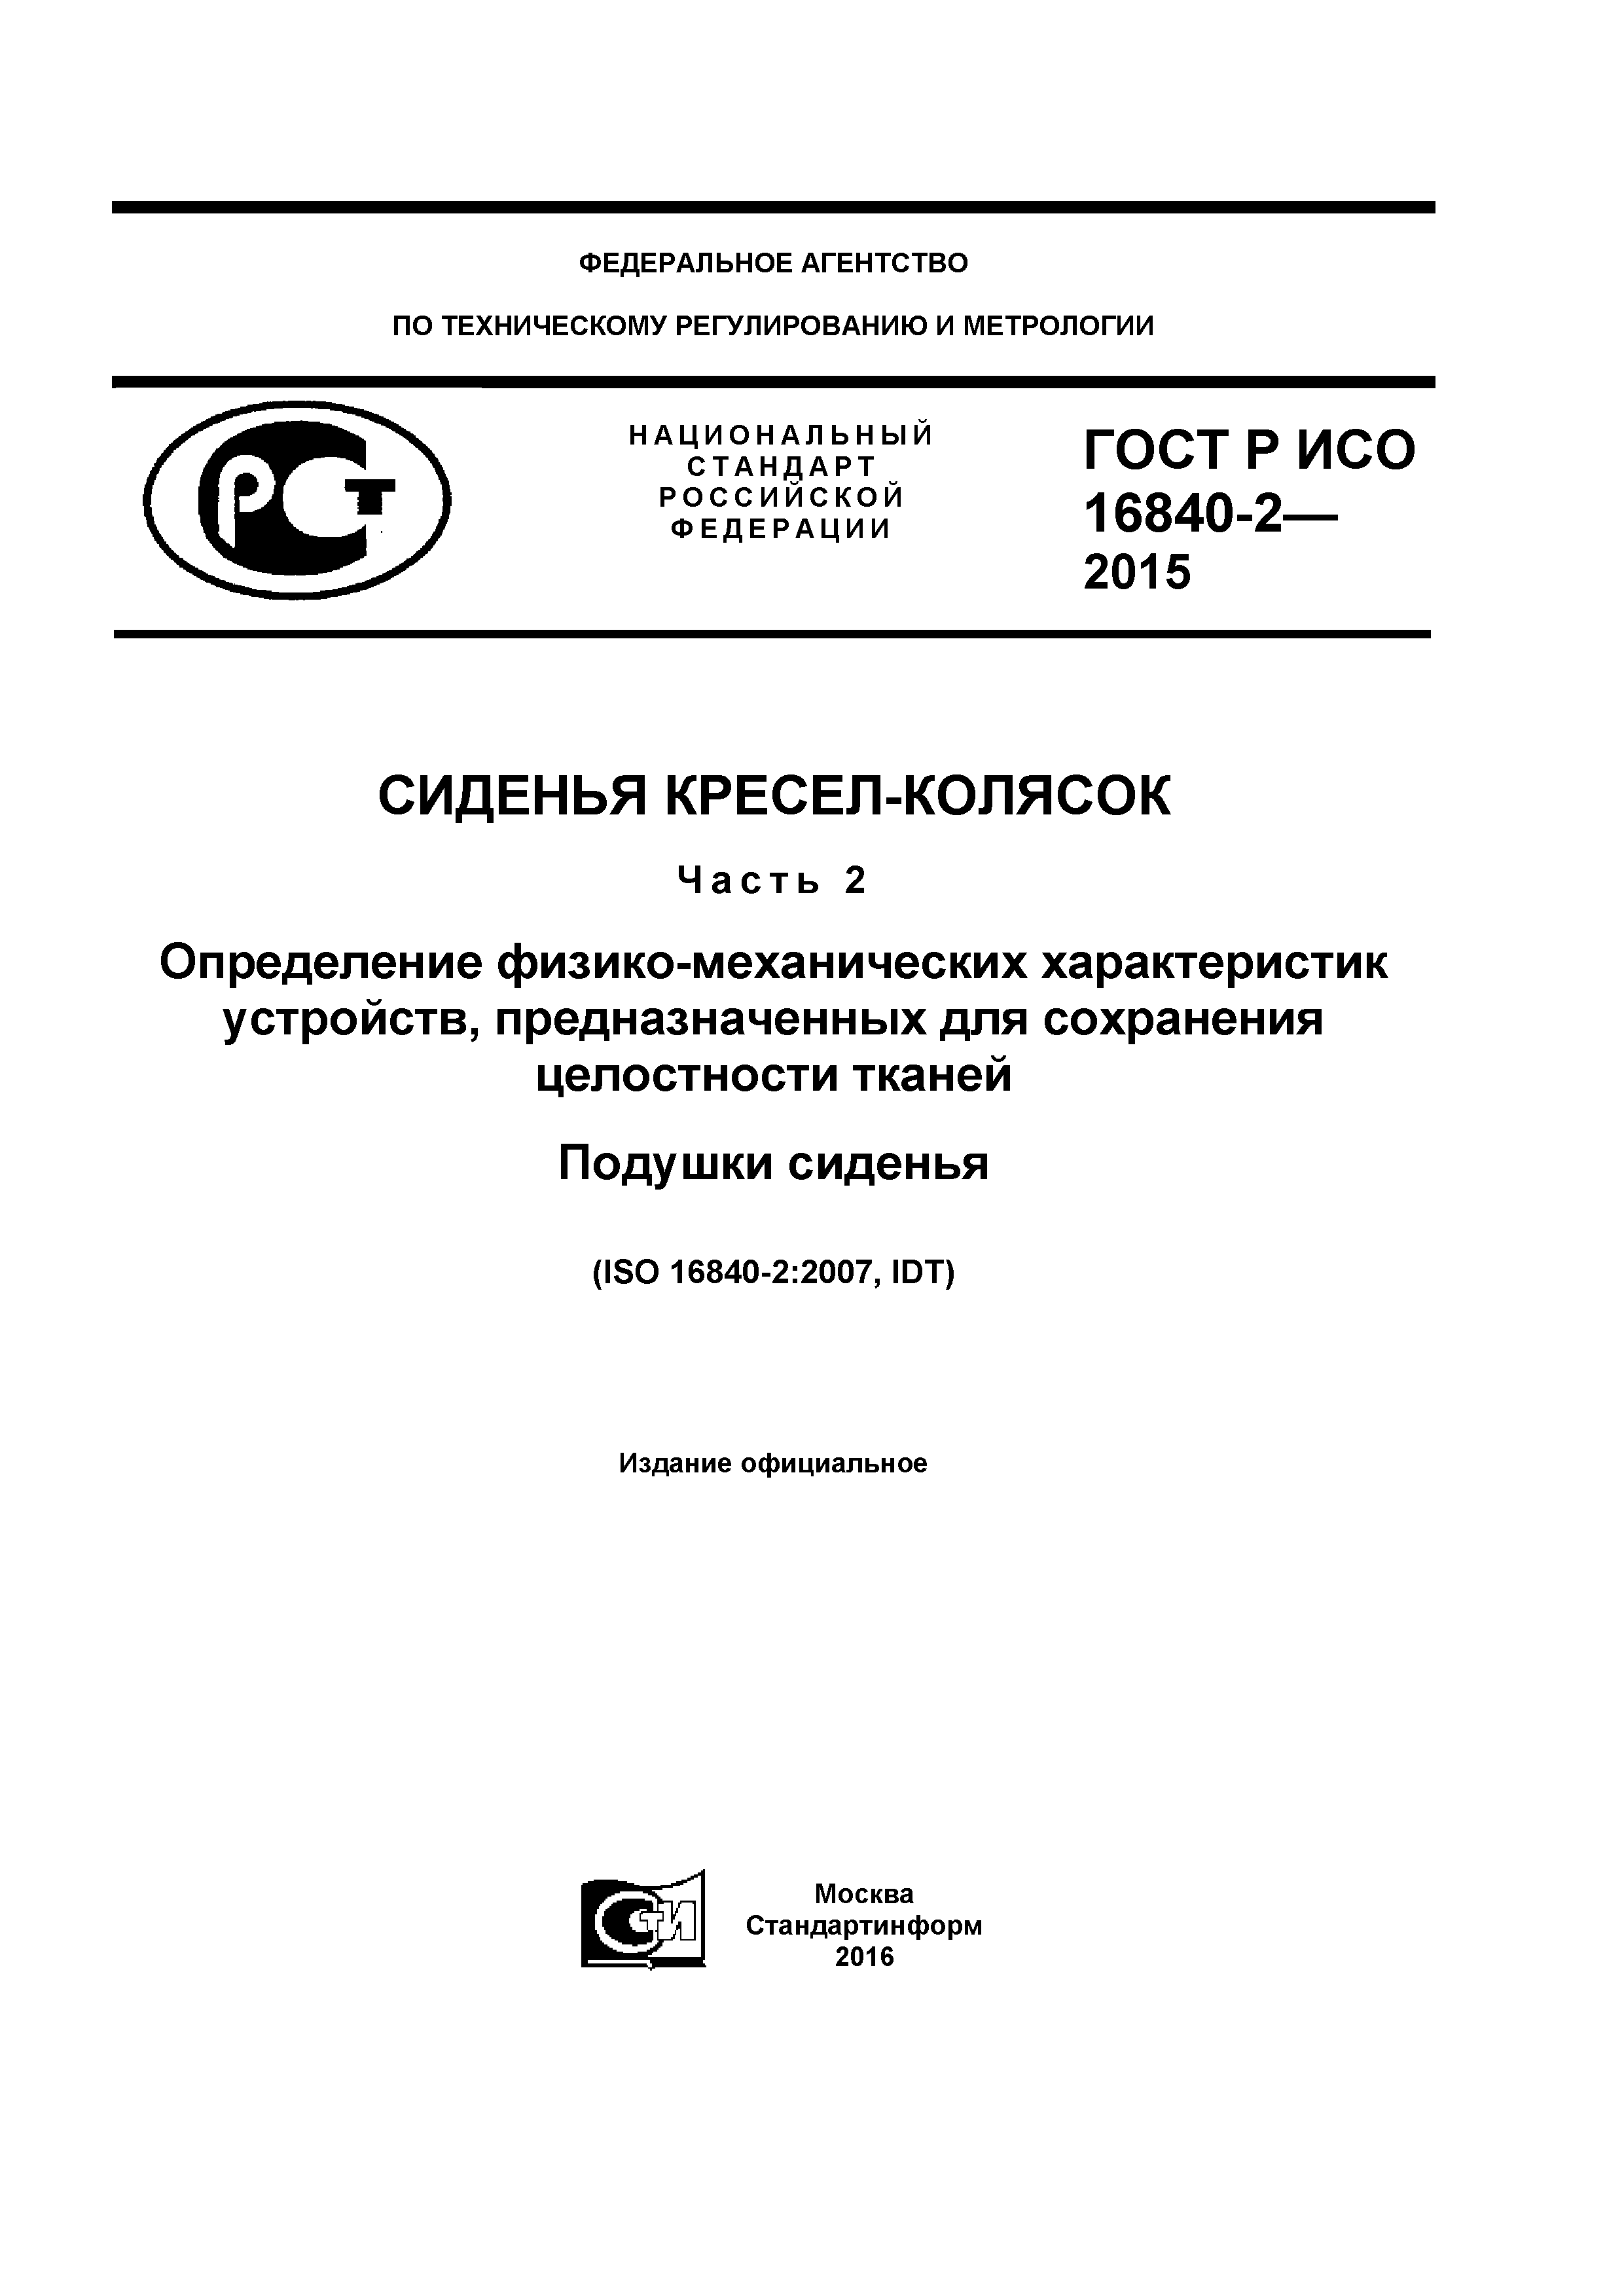 ГОСТ Р ИСО 16840-2-2015